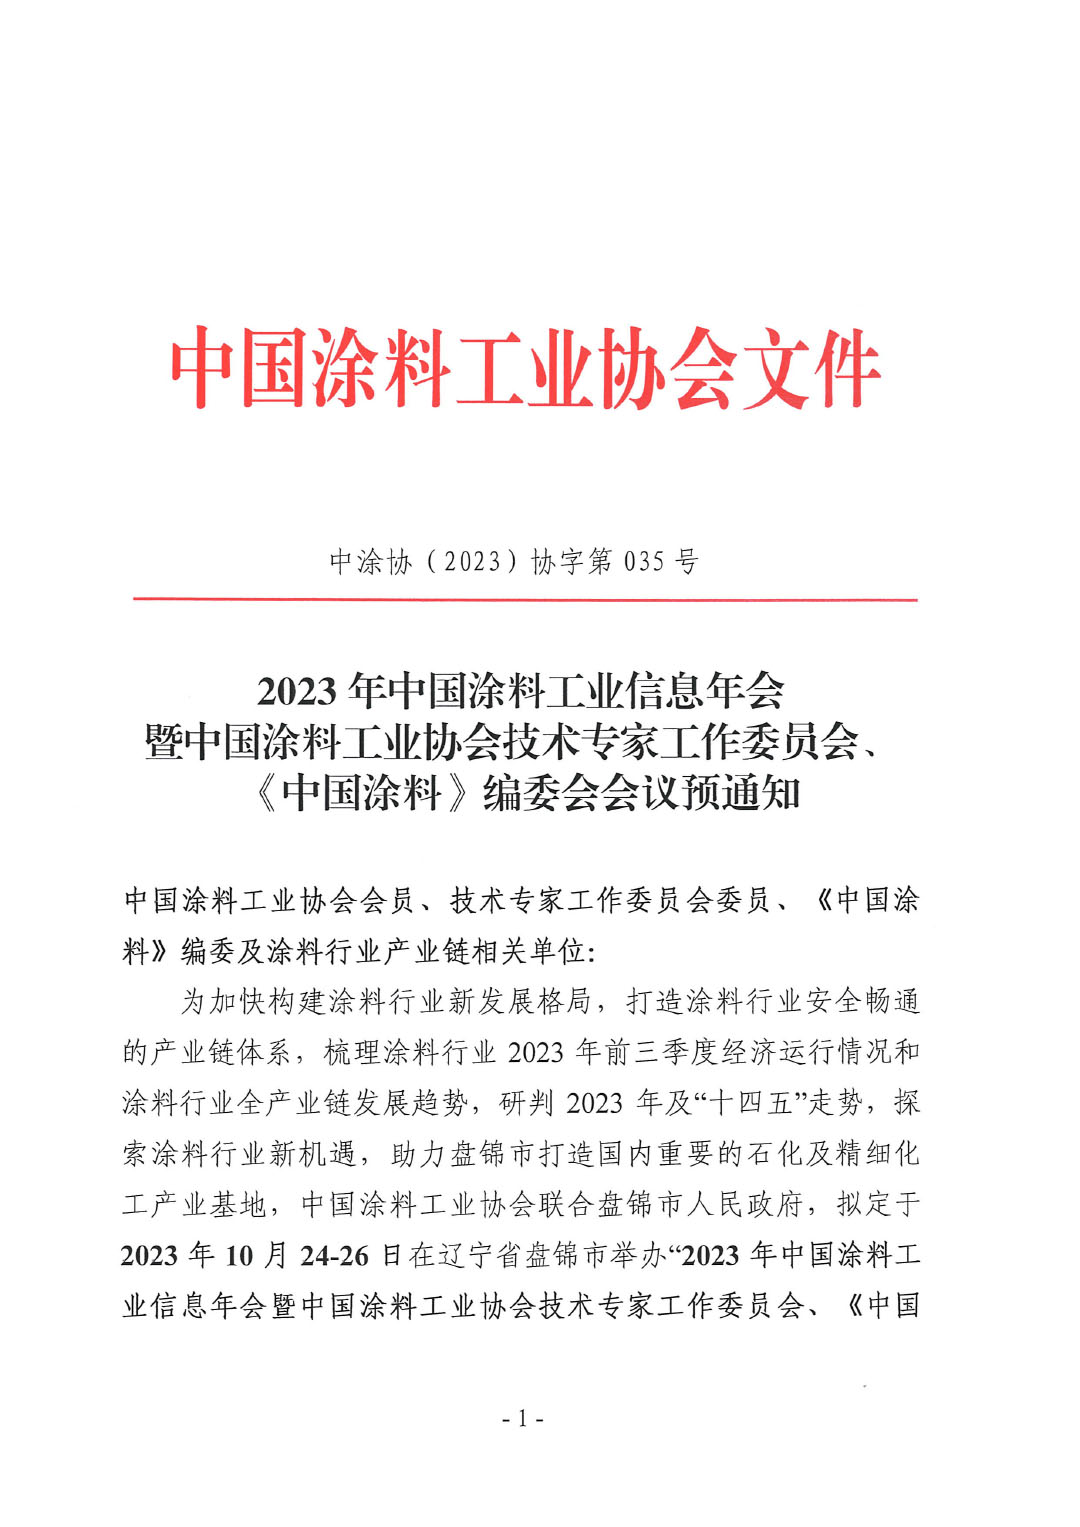 2023年中国涂料工业信息年会预通知（发文版）-1